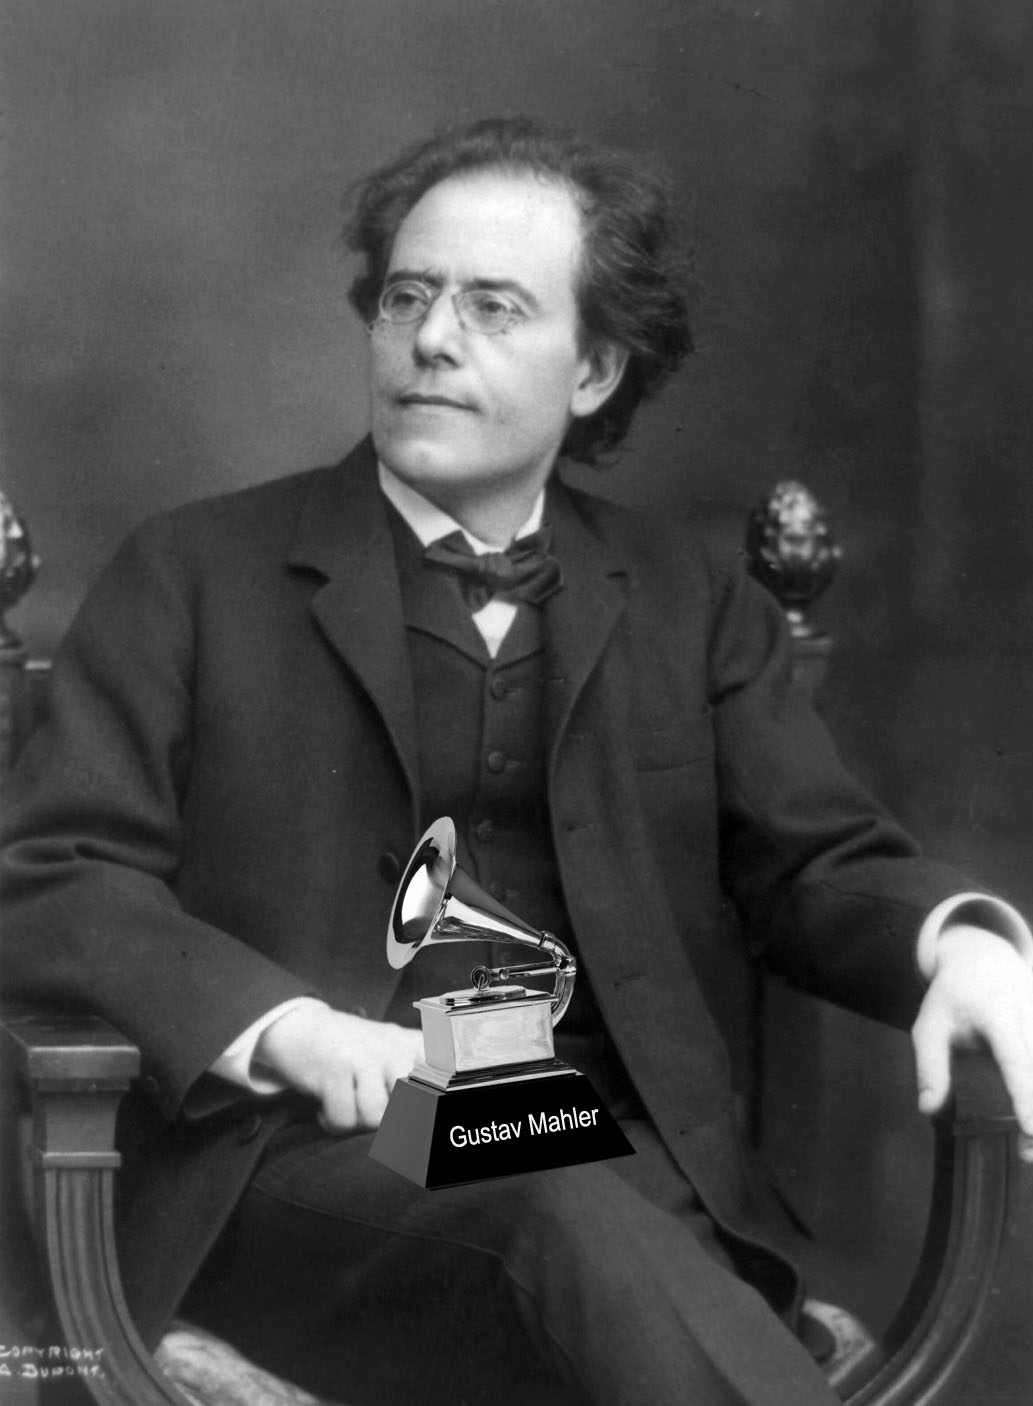 Gustav Mahler with poorly PhotoShopped Grammy.